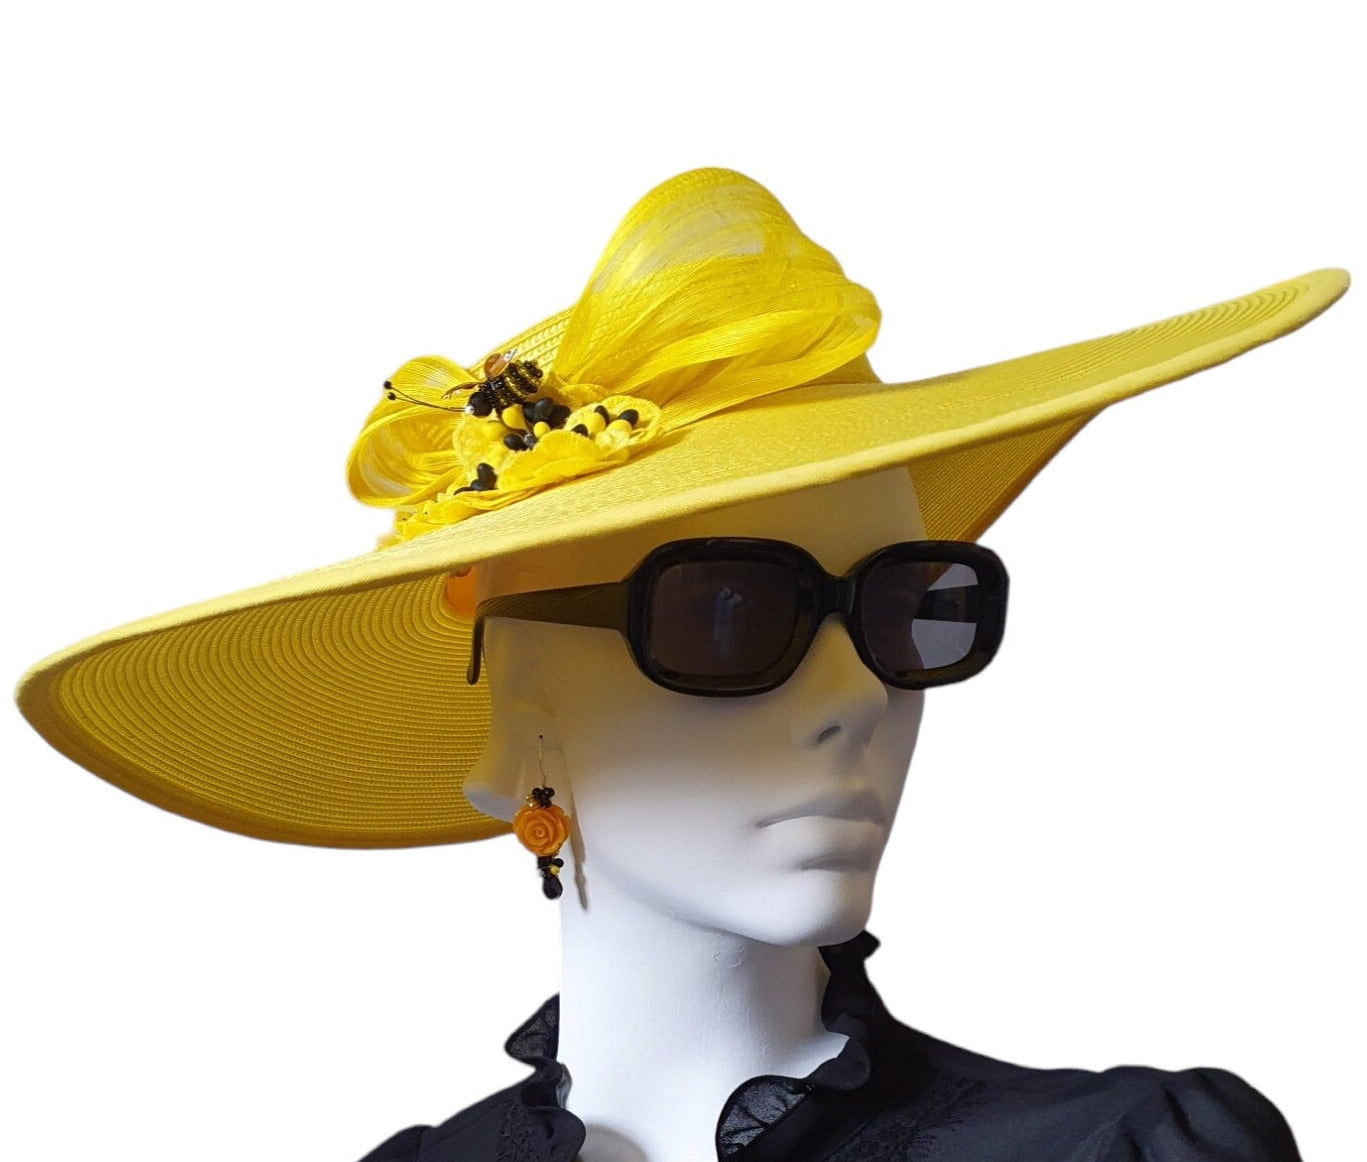 Elegante Pamela de Boda de Polipropileno Amarillo para Invitadas - Abaca de Seda, Ala Ancha, Perfecto para Eventos de Verano